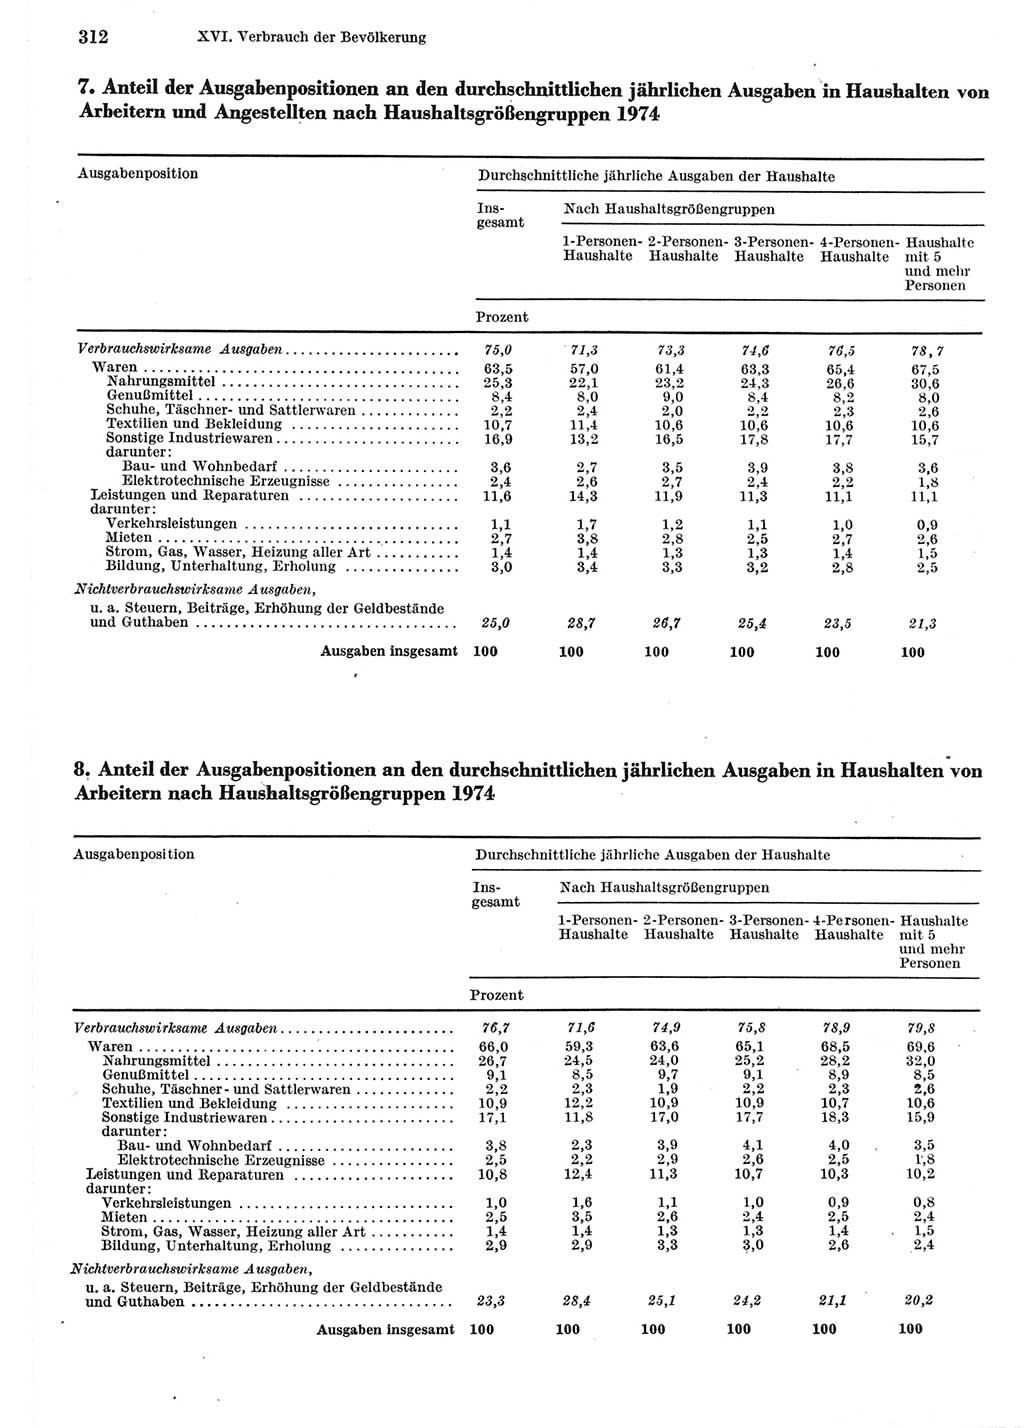 Statistisches Jahrbuch der Deutschen Demokratischen Republik (DDR) 1975, Seite 312 (Stat. Jb. DDR 1975, S. 312)